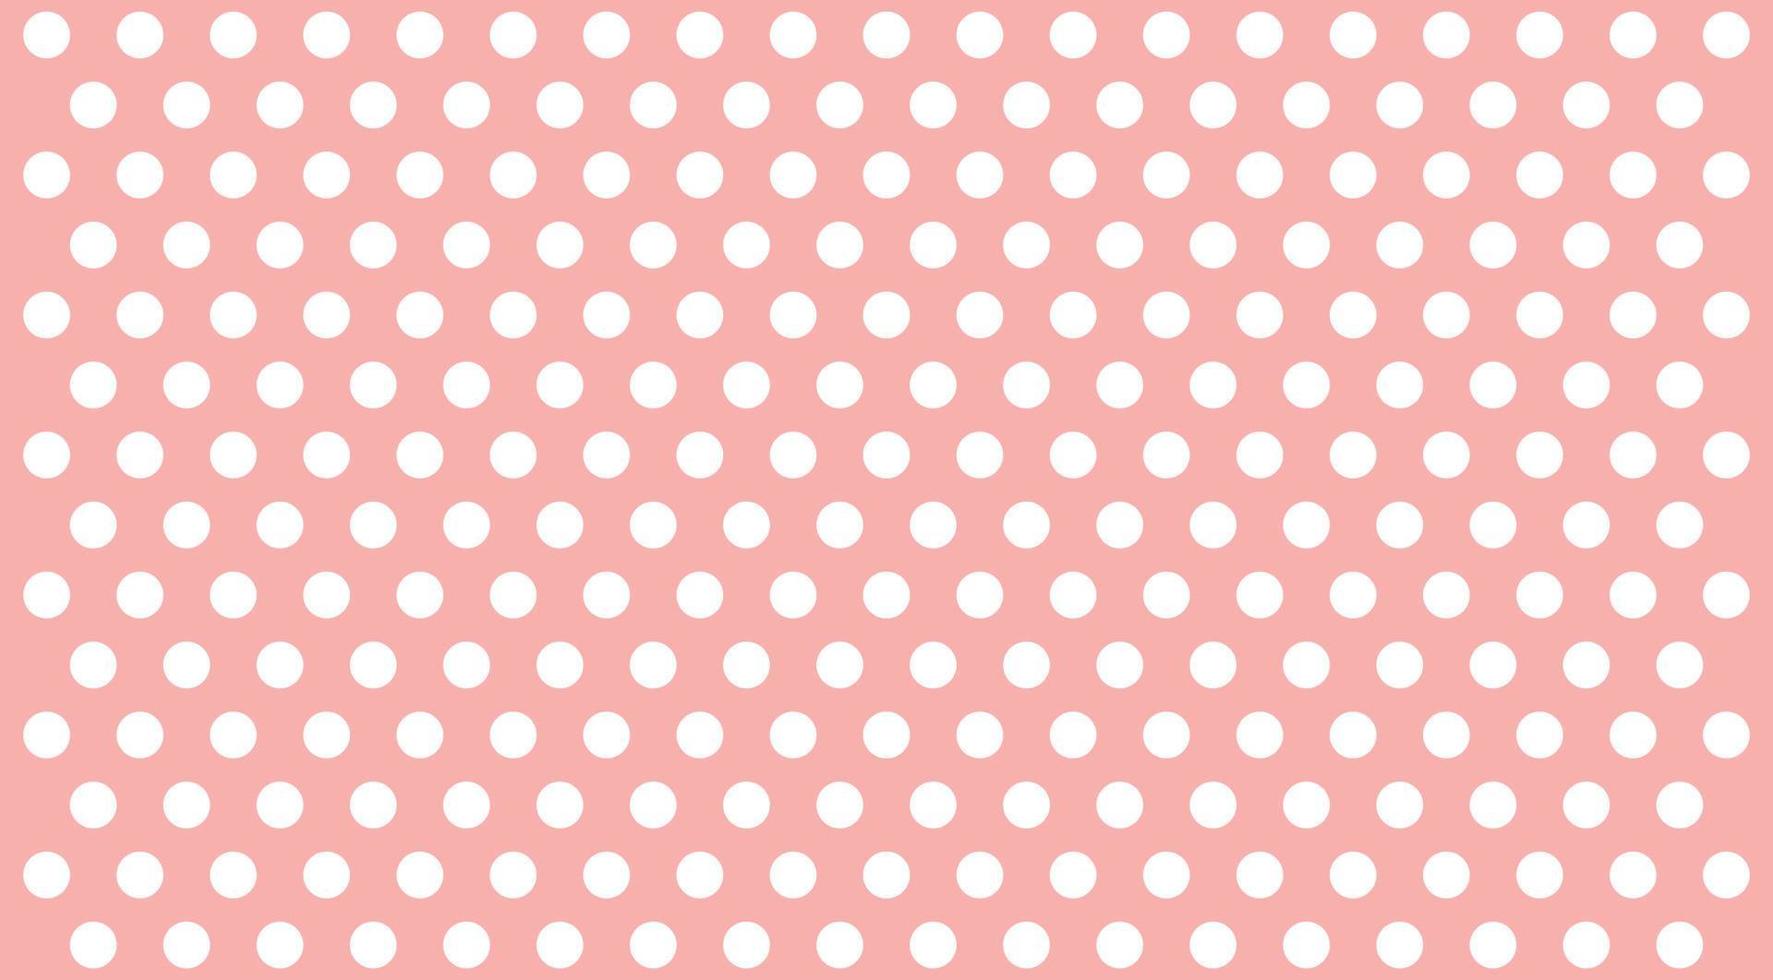 bastante lindo dulce lunares de patrones sin fisuras retro elegante vintage rosa y blanco amplio concepto de fondo para la impresión de moda vector